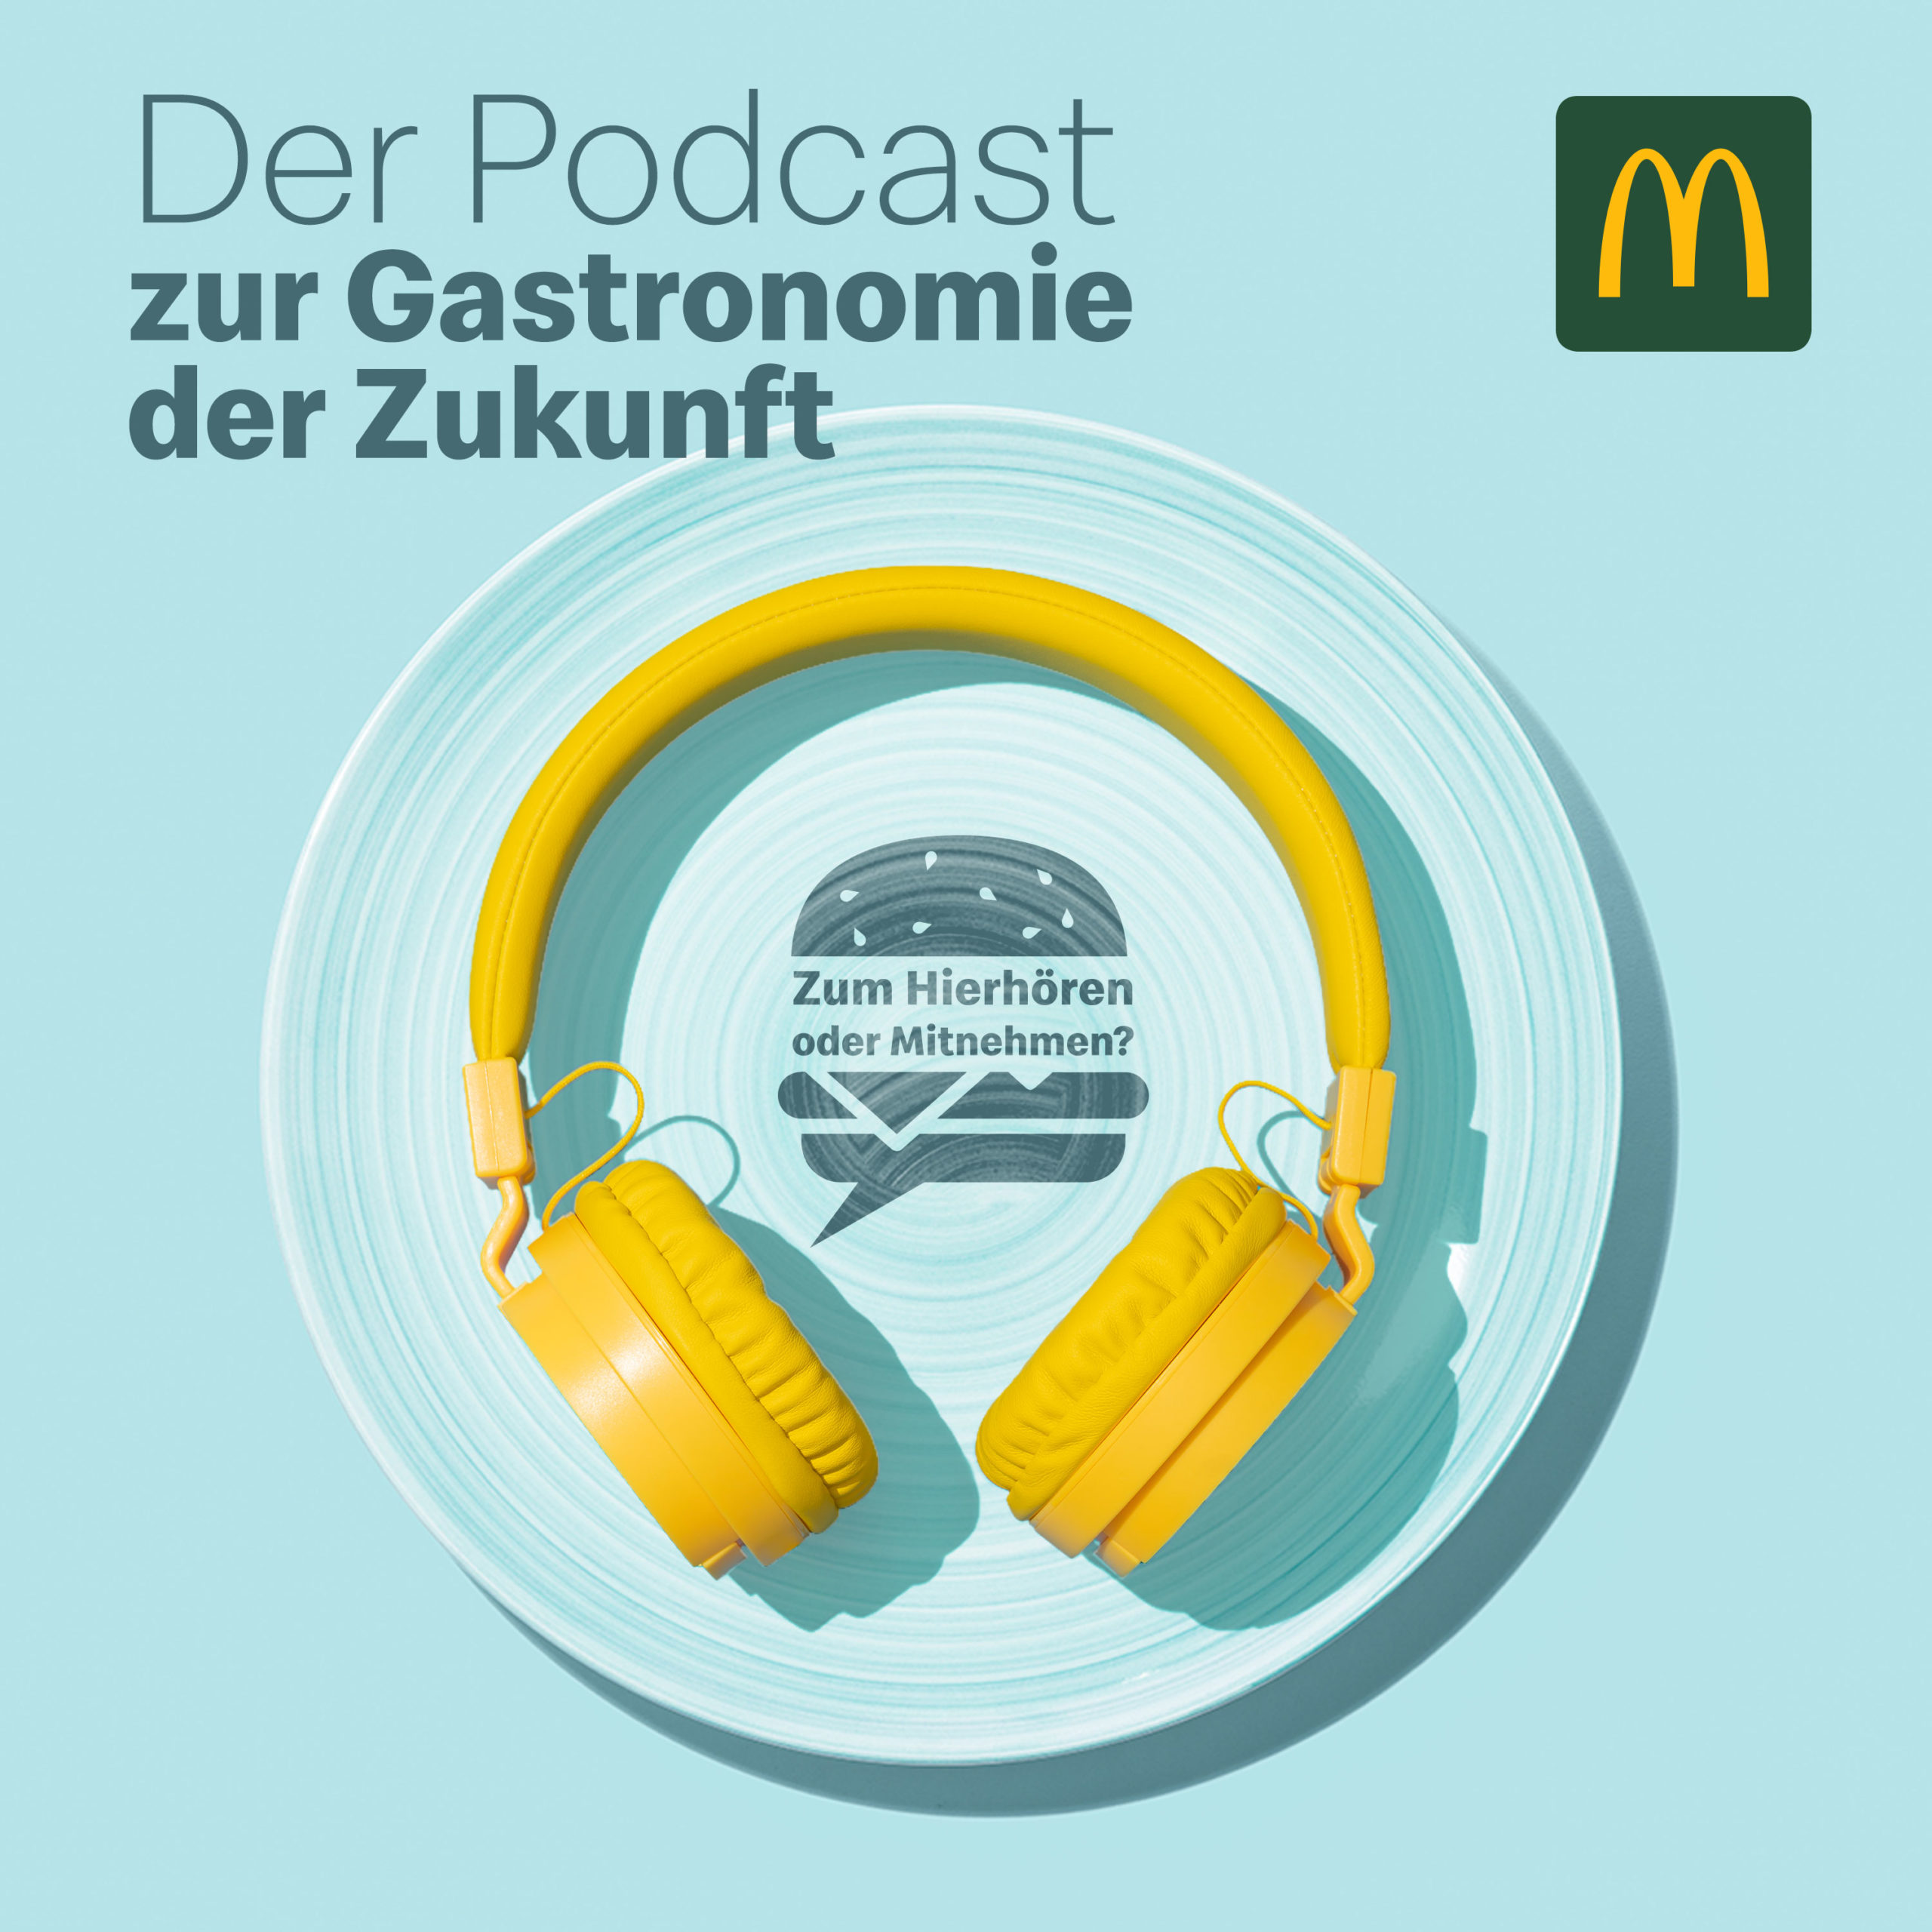 „Zum Hierhören oder Mitnehmen“ – Der Podcast zur Gastronomie der Zukunft